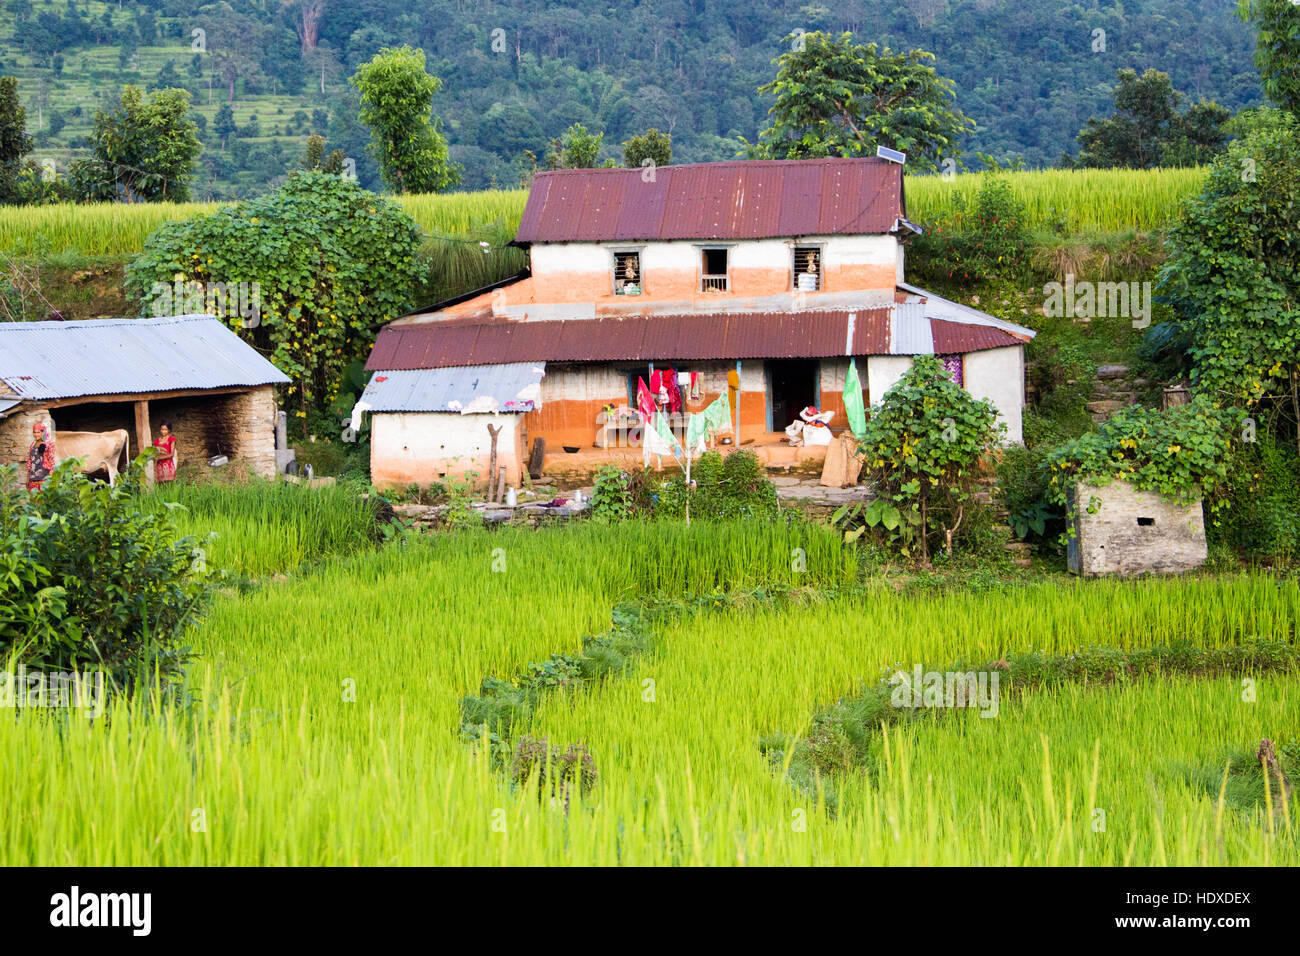 Maison locale dans les collines près de Pokhara, Népal Banque D'Images